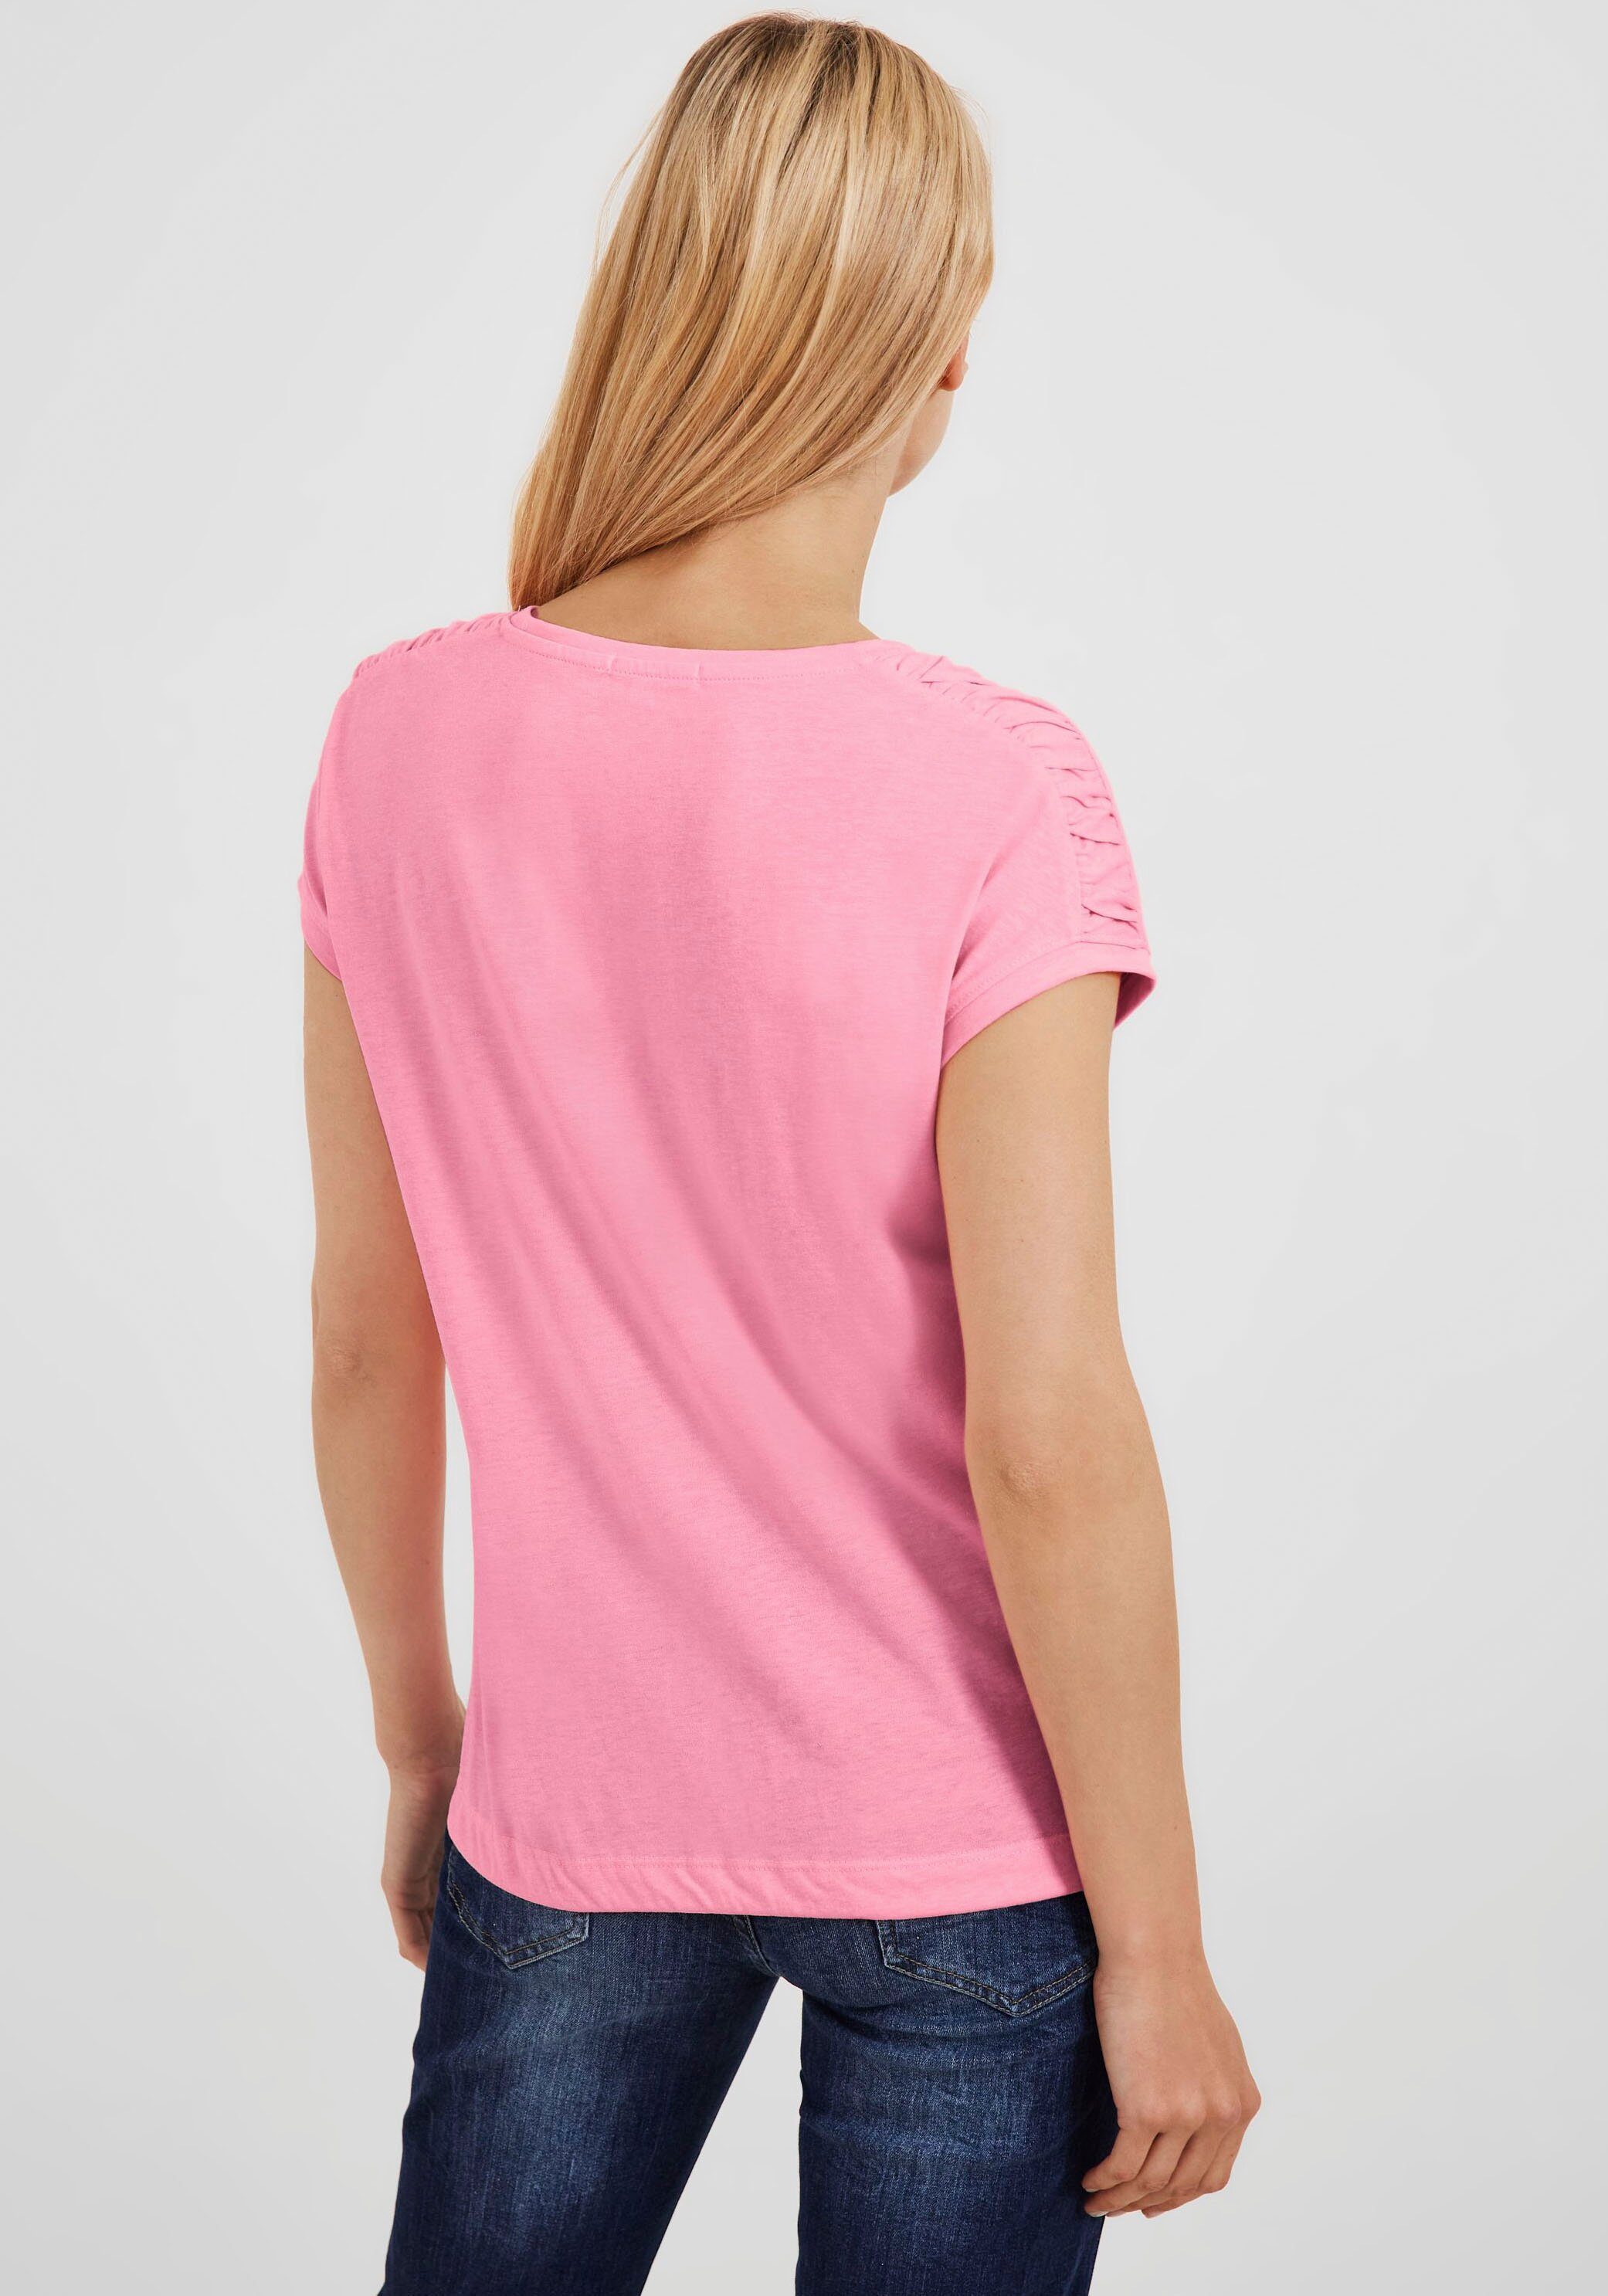 Cecil T-Shirt NOS Fledermausärmeln soft pink S Shoulder mit Gathering